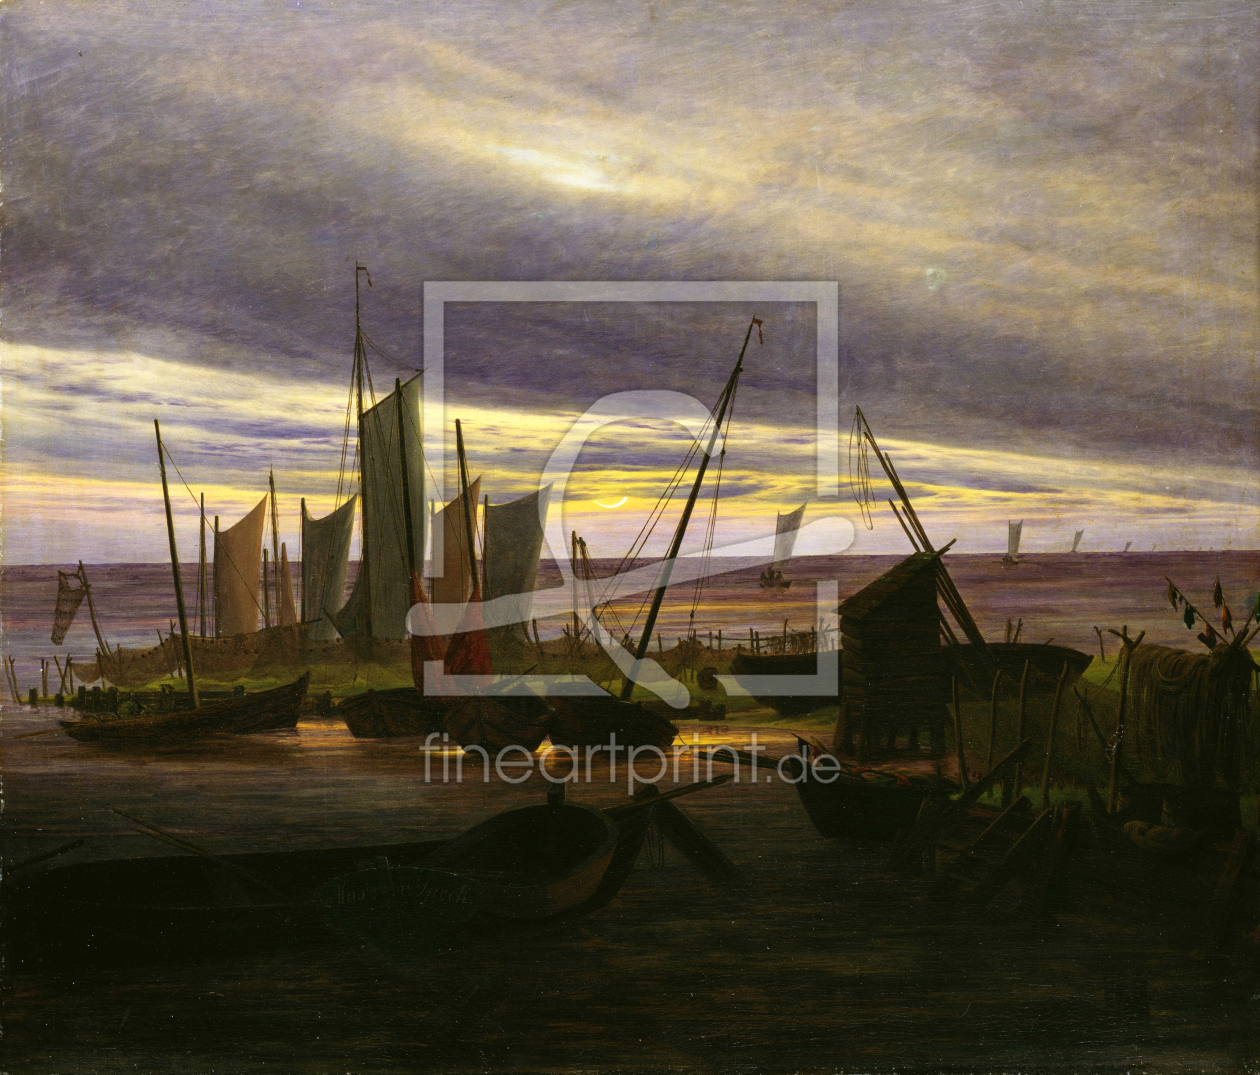 Bild-Nr.: 30001600 Friedrich / Ships in the harbour / 1828 erstellt von Friedrich, Caspar David